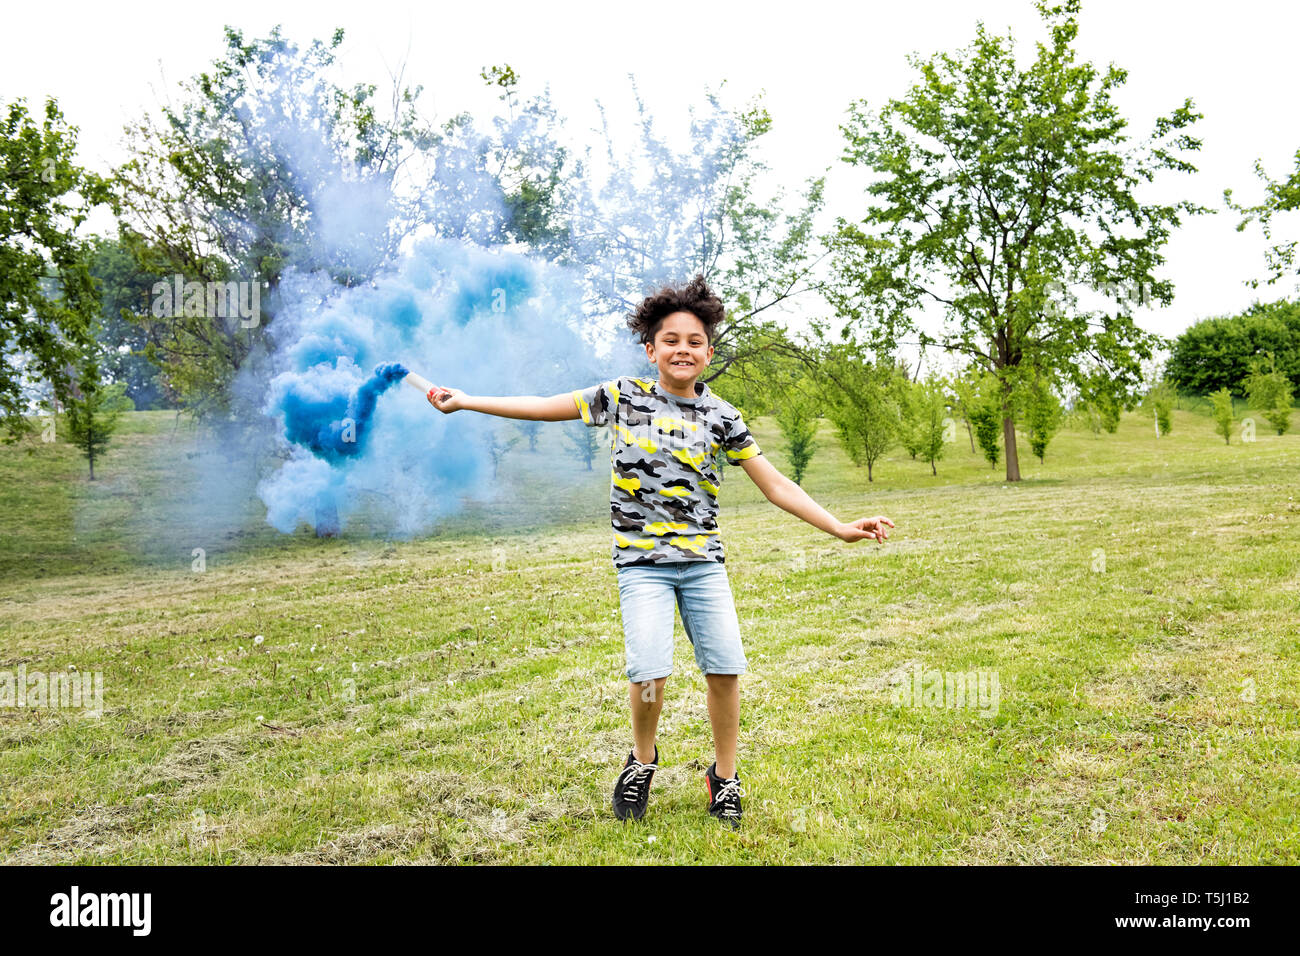 Junge schleppt ein blauer Rauch flare in einem Park über den rasen laufen mit einem strahlenden Lächeln der Freude und Genuss Stockfoto